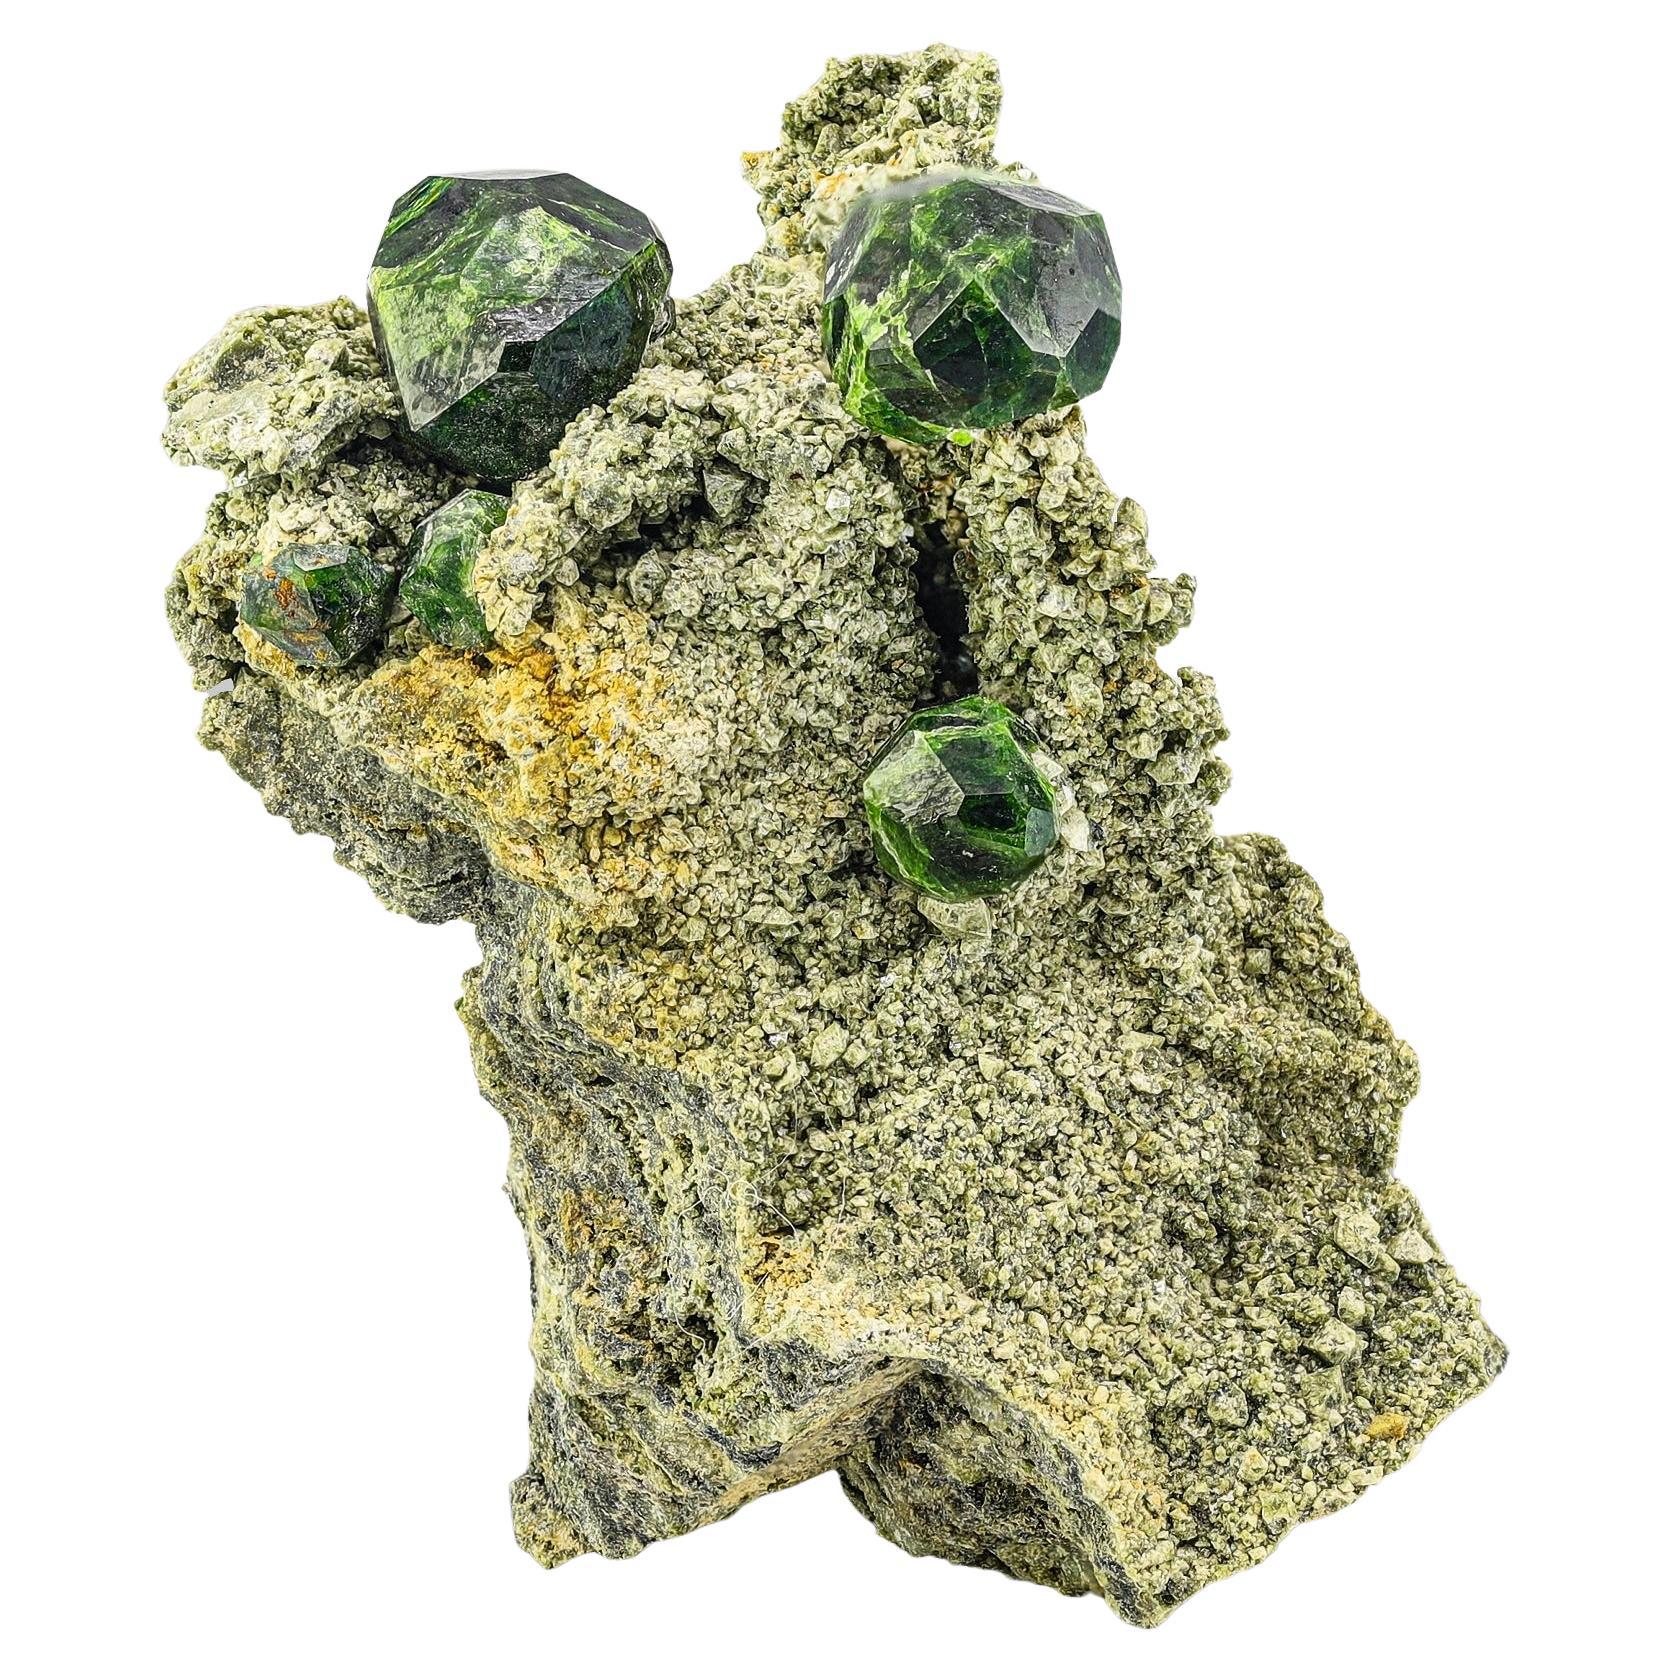 Crystals de grenat démantoïde de couleur vert émeraude enchâssés sur matrice d'Iran